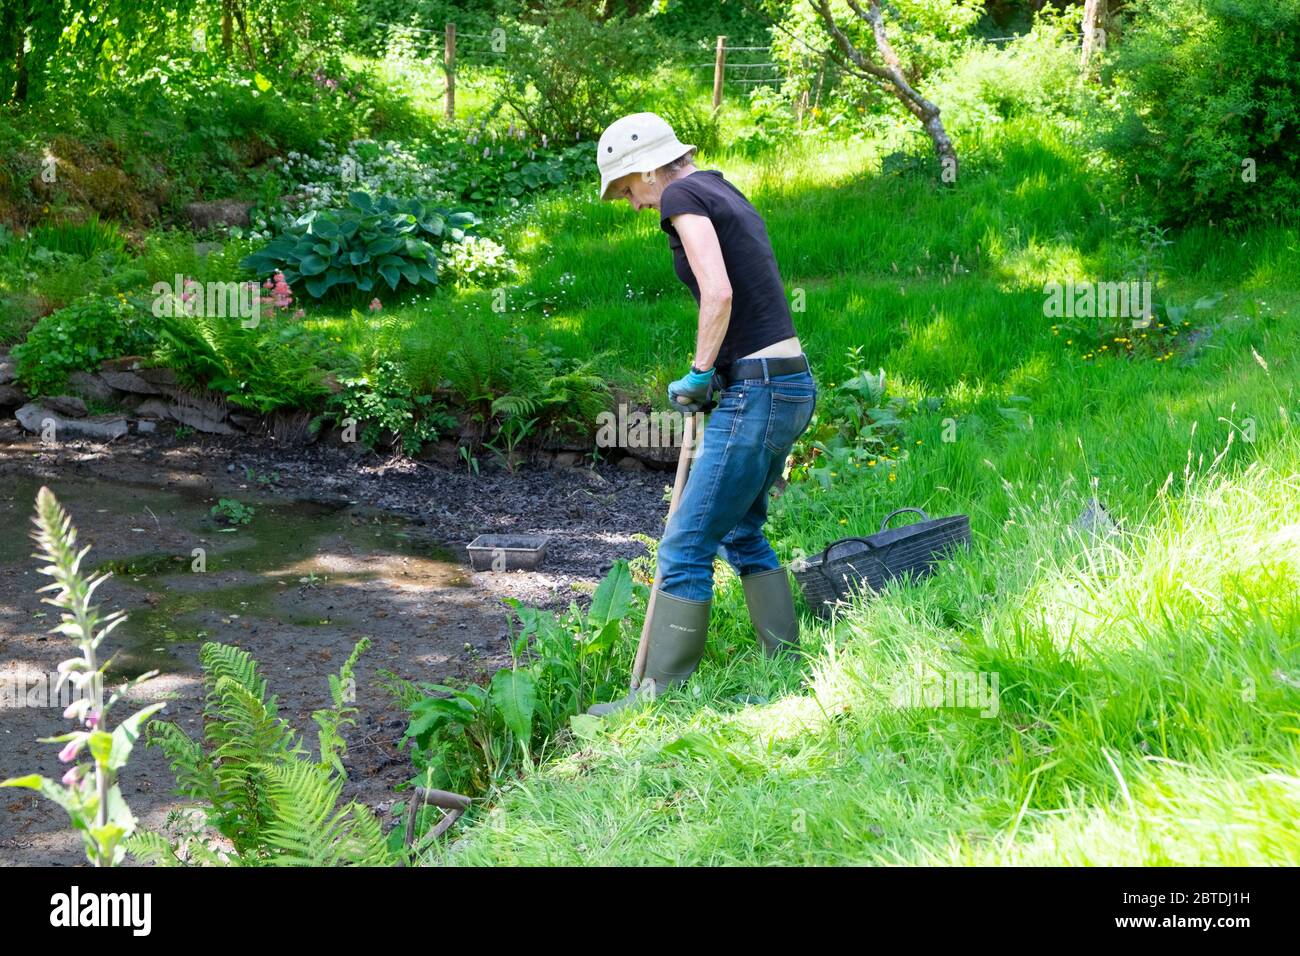 Une femme jardinière qui creuse le quai de désherbage laisse des mauvaises herbes autour du bord d'un étang de jardin séché boueux en mai printemps Carmarthenshire pays de Galles Royaume-Uni. KATHY DEWITT Banque D'Images